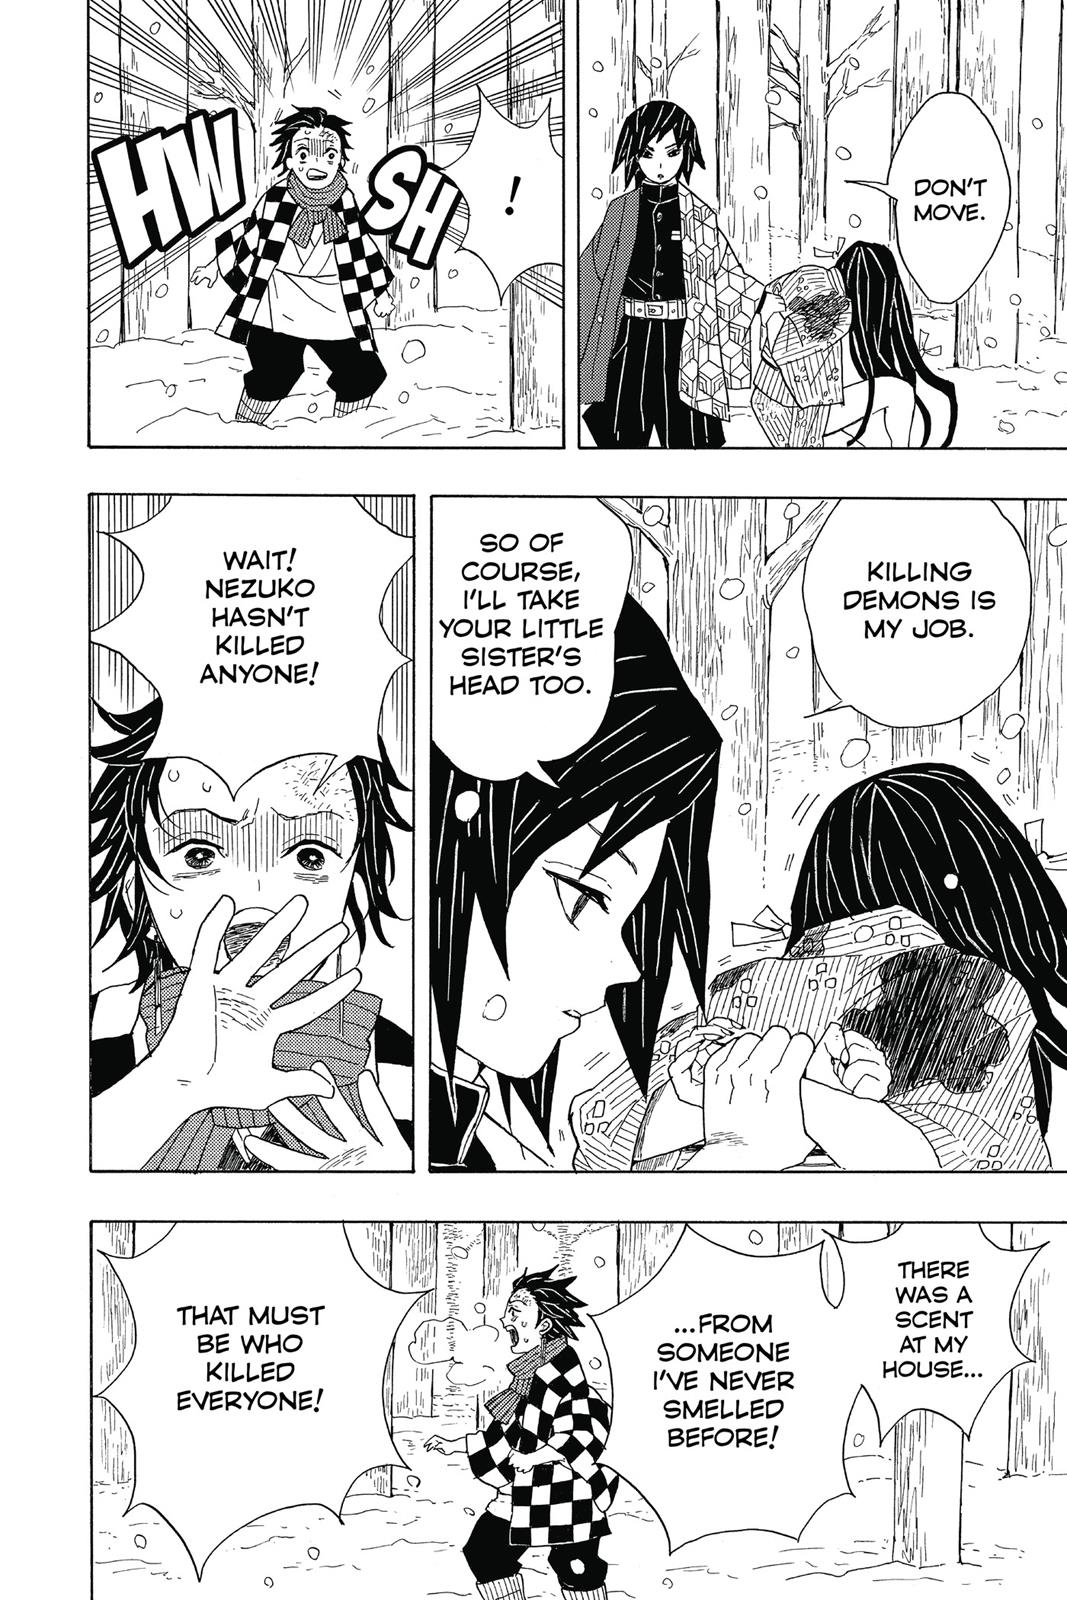 Demon Slayer Manga Manga Chapter - 1 - image 16